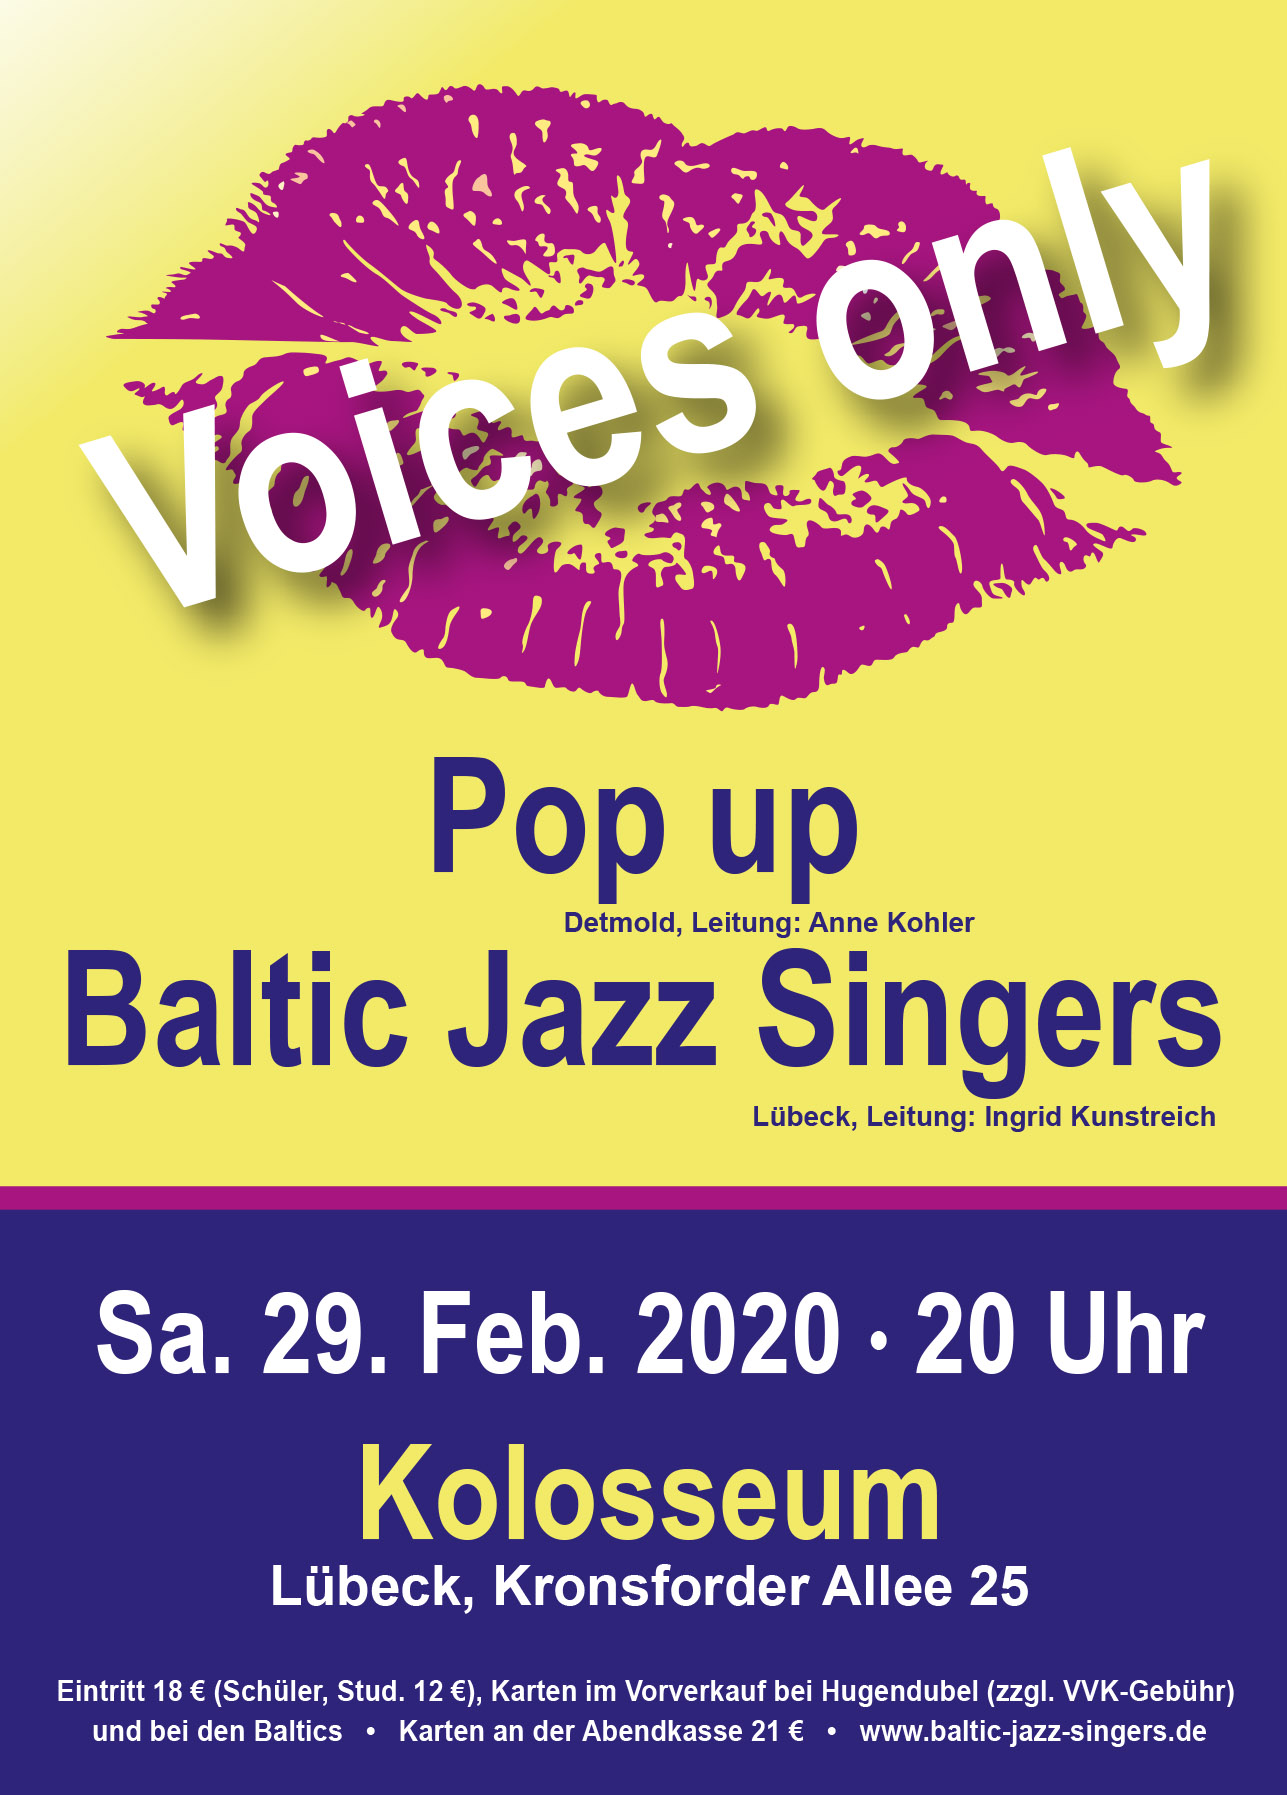 Pop-Up beim Voices-Only 2020 mit den Baltic Jazz Singers in Lübeck, Kolosseum